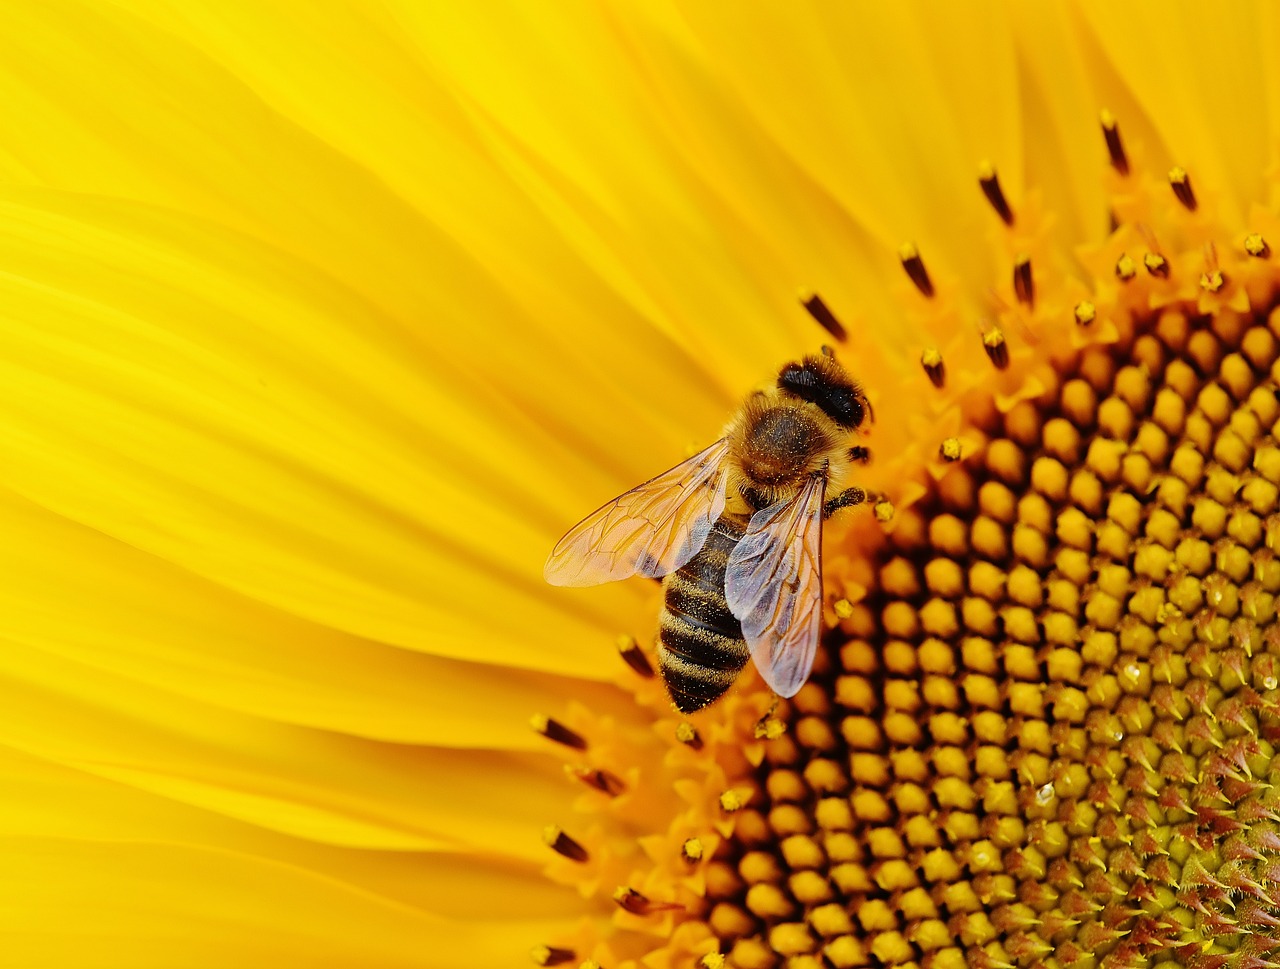 Longue vie aux abeilles?